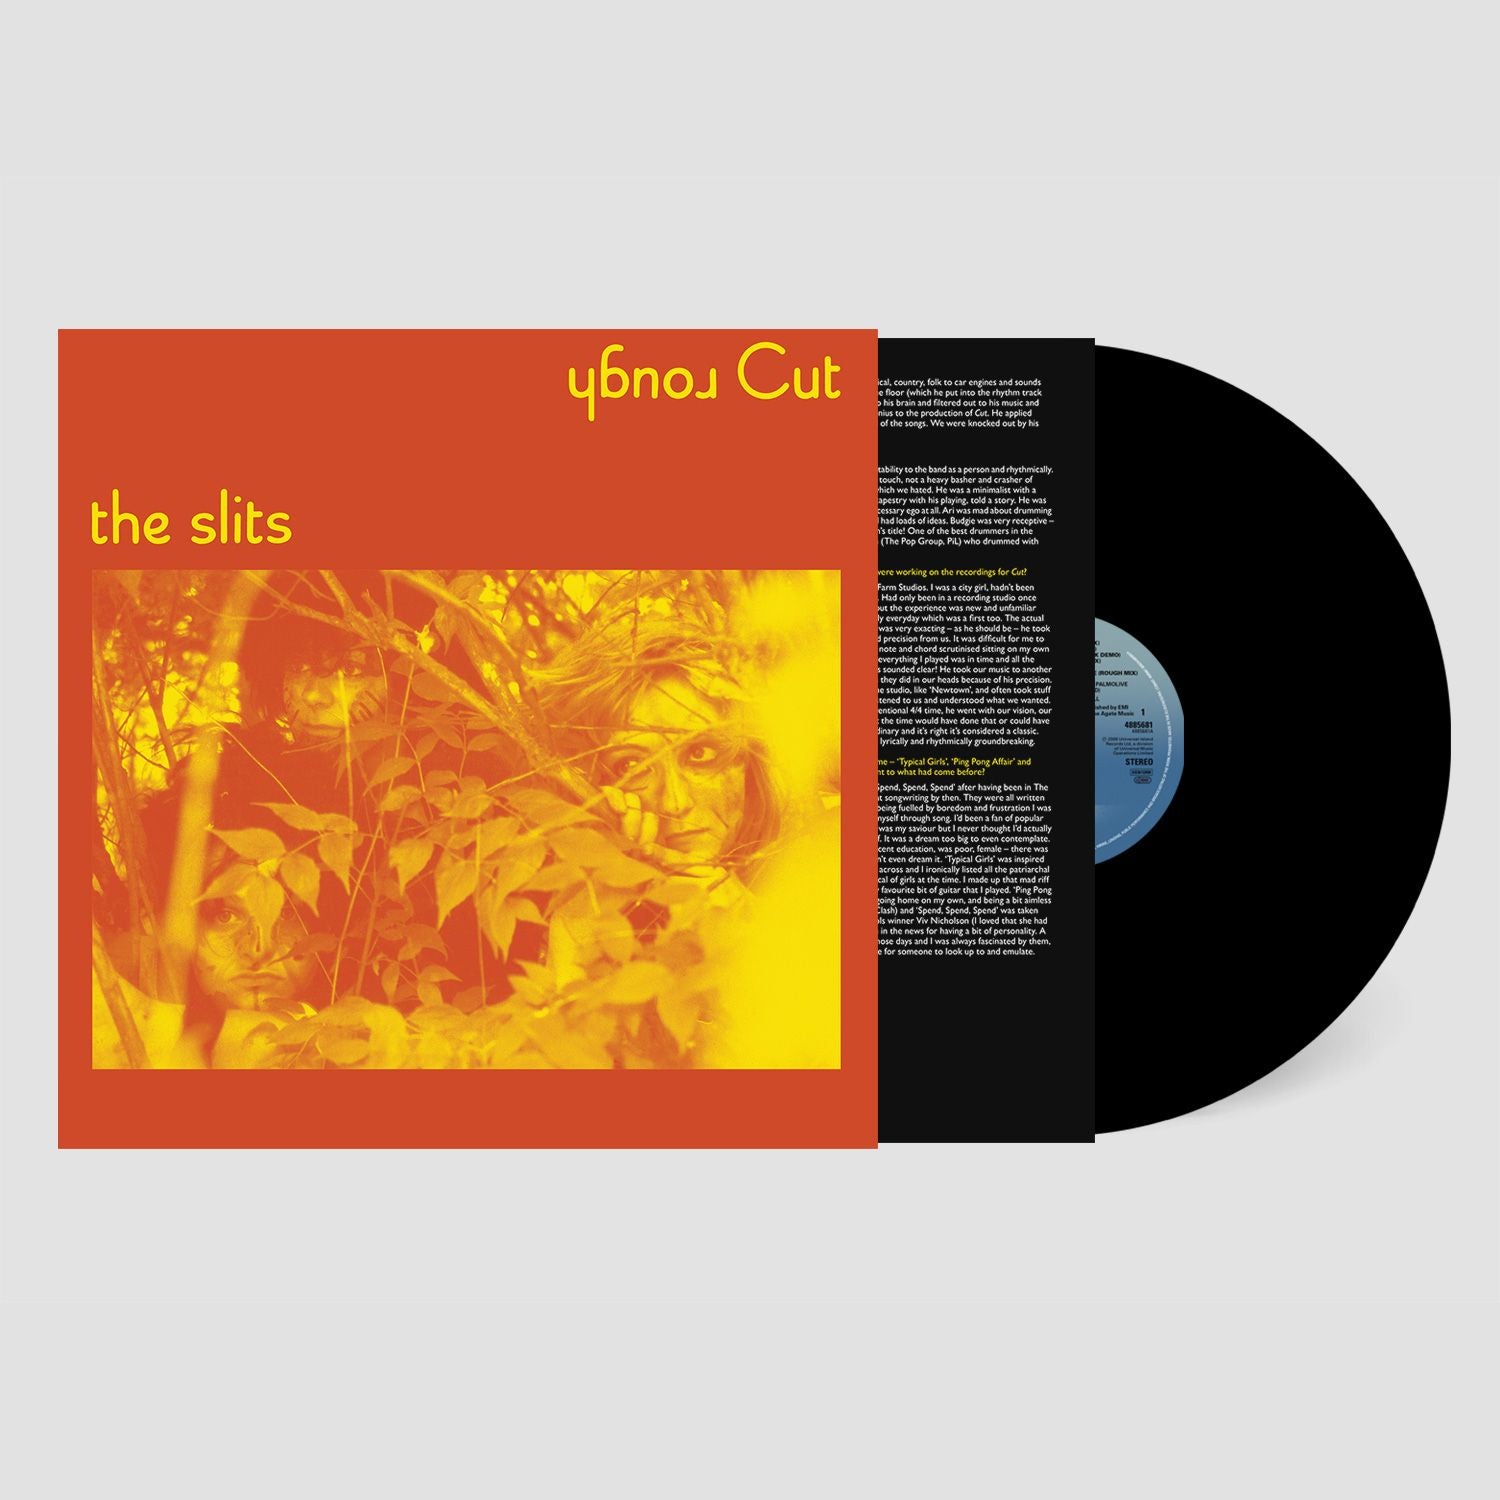 THE SLITS - (Un)Cut - The Demos And Alternative Mixes - LP - Vinyl [RSD23]